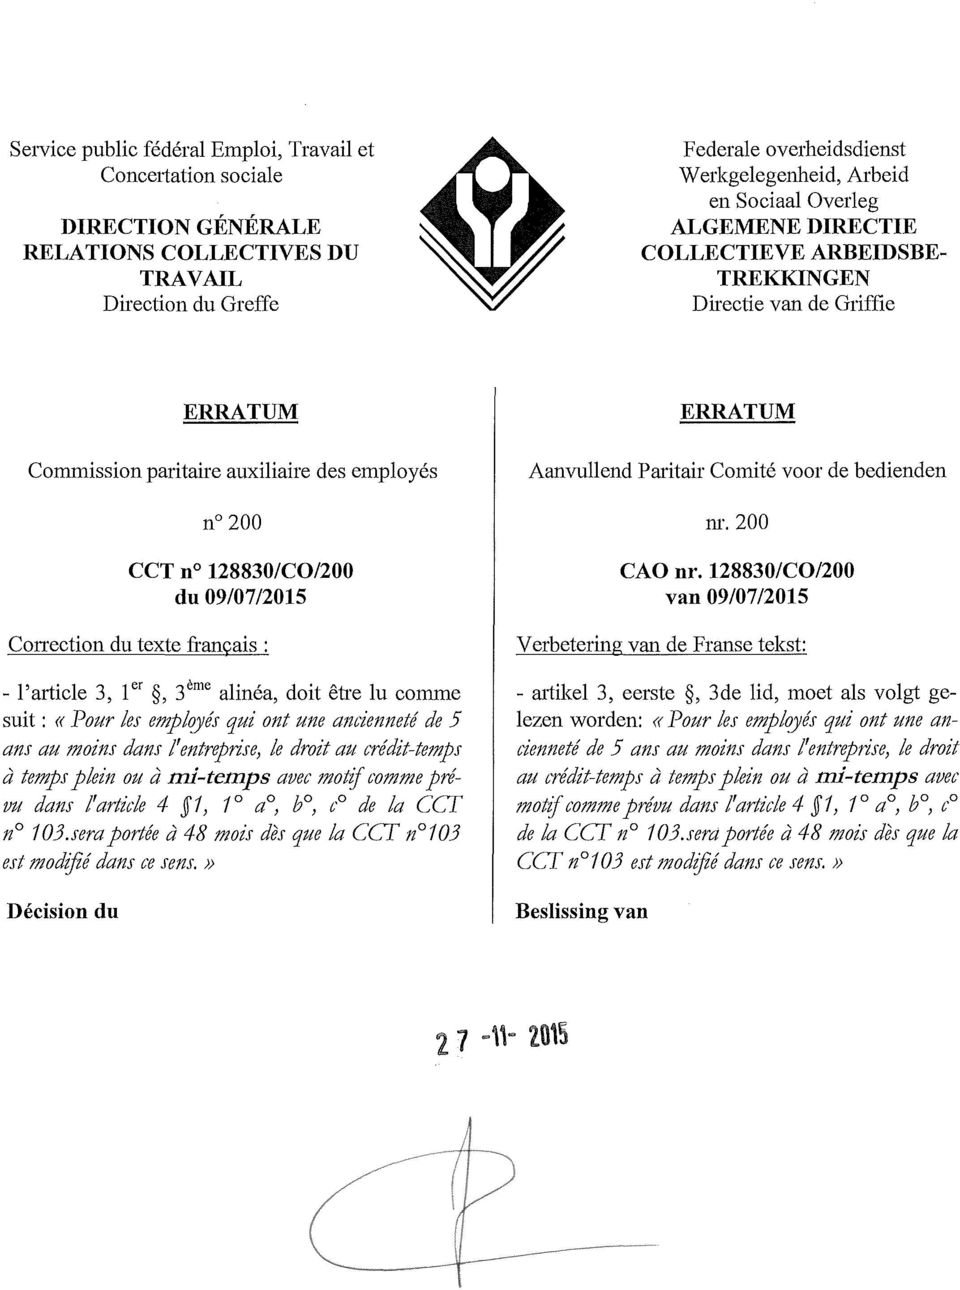 128830/CO/200 du 09/07/2015 Correction du texte français: - l'article 3, l ", 3 ème alinéa, doit être lu comme suit: «Pour les empl?